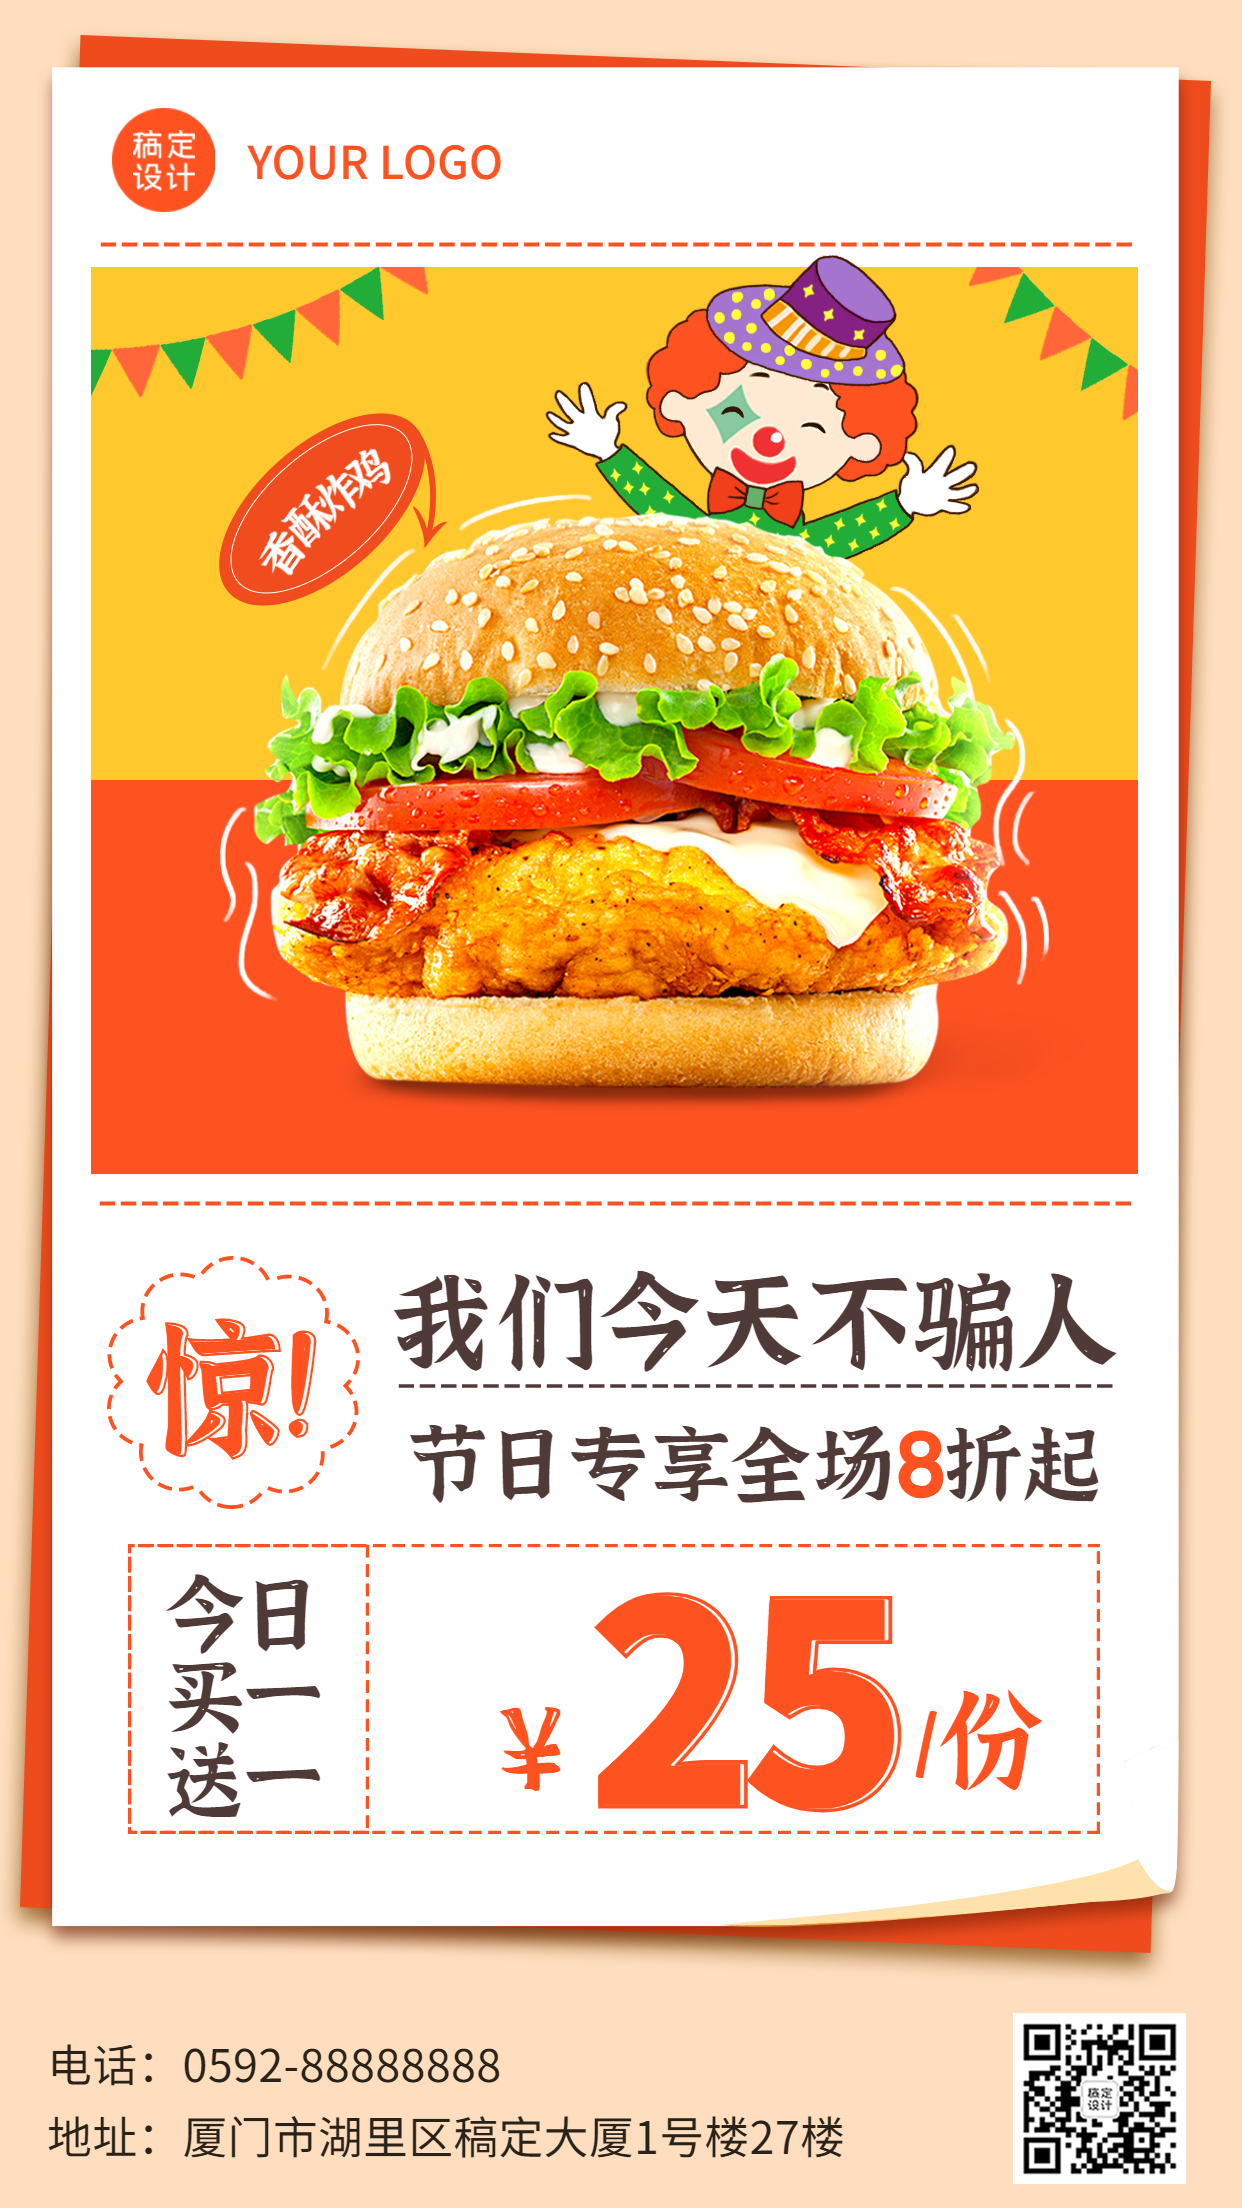 愚人节产品营销促销餐饮手机海报预览效果